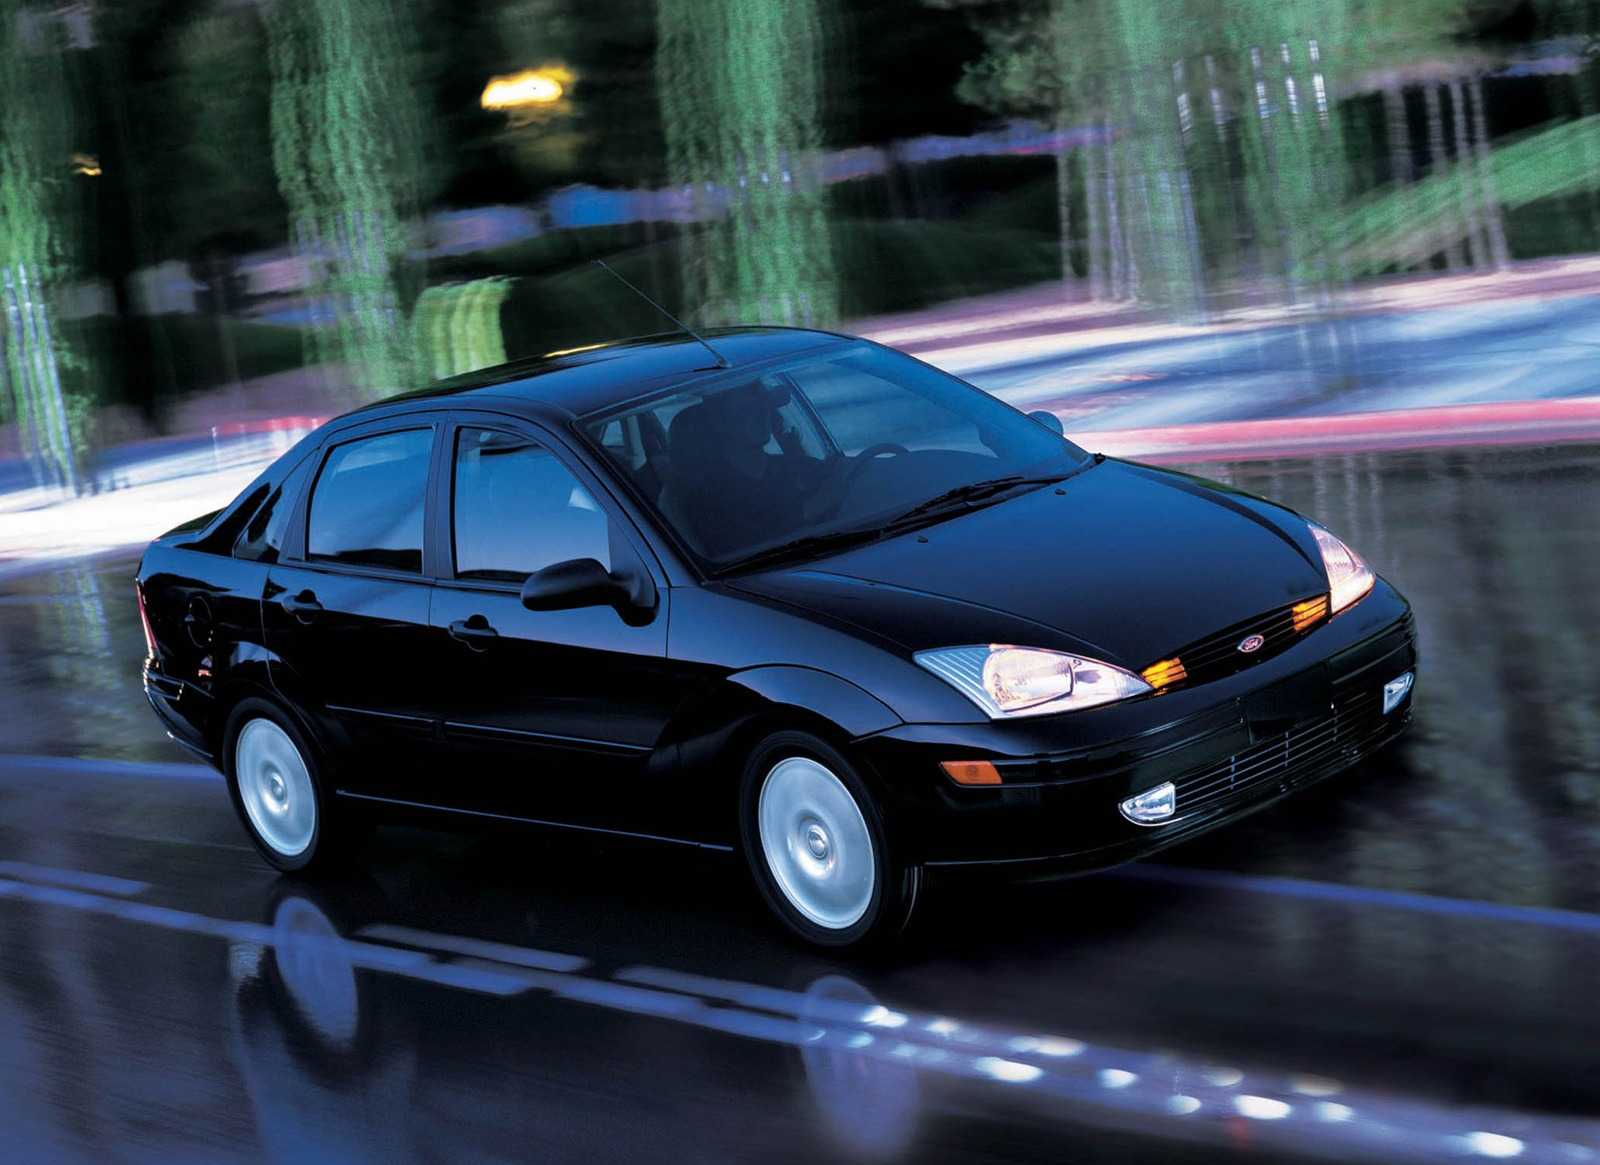 Диагностика системы впрыска «ford eec v» автомобилей ford focus 1998-2004 гг. выпуска .